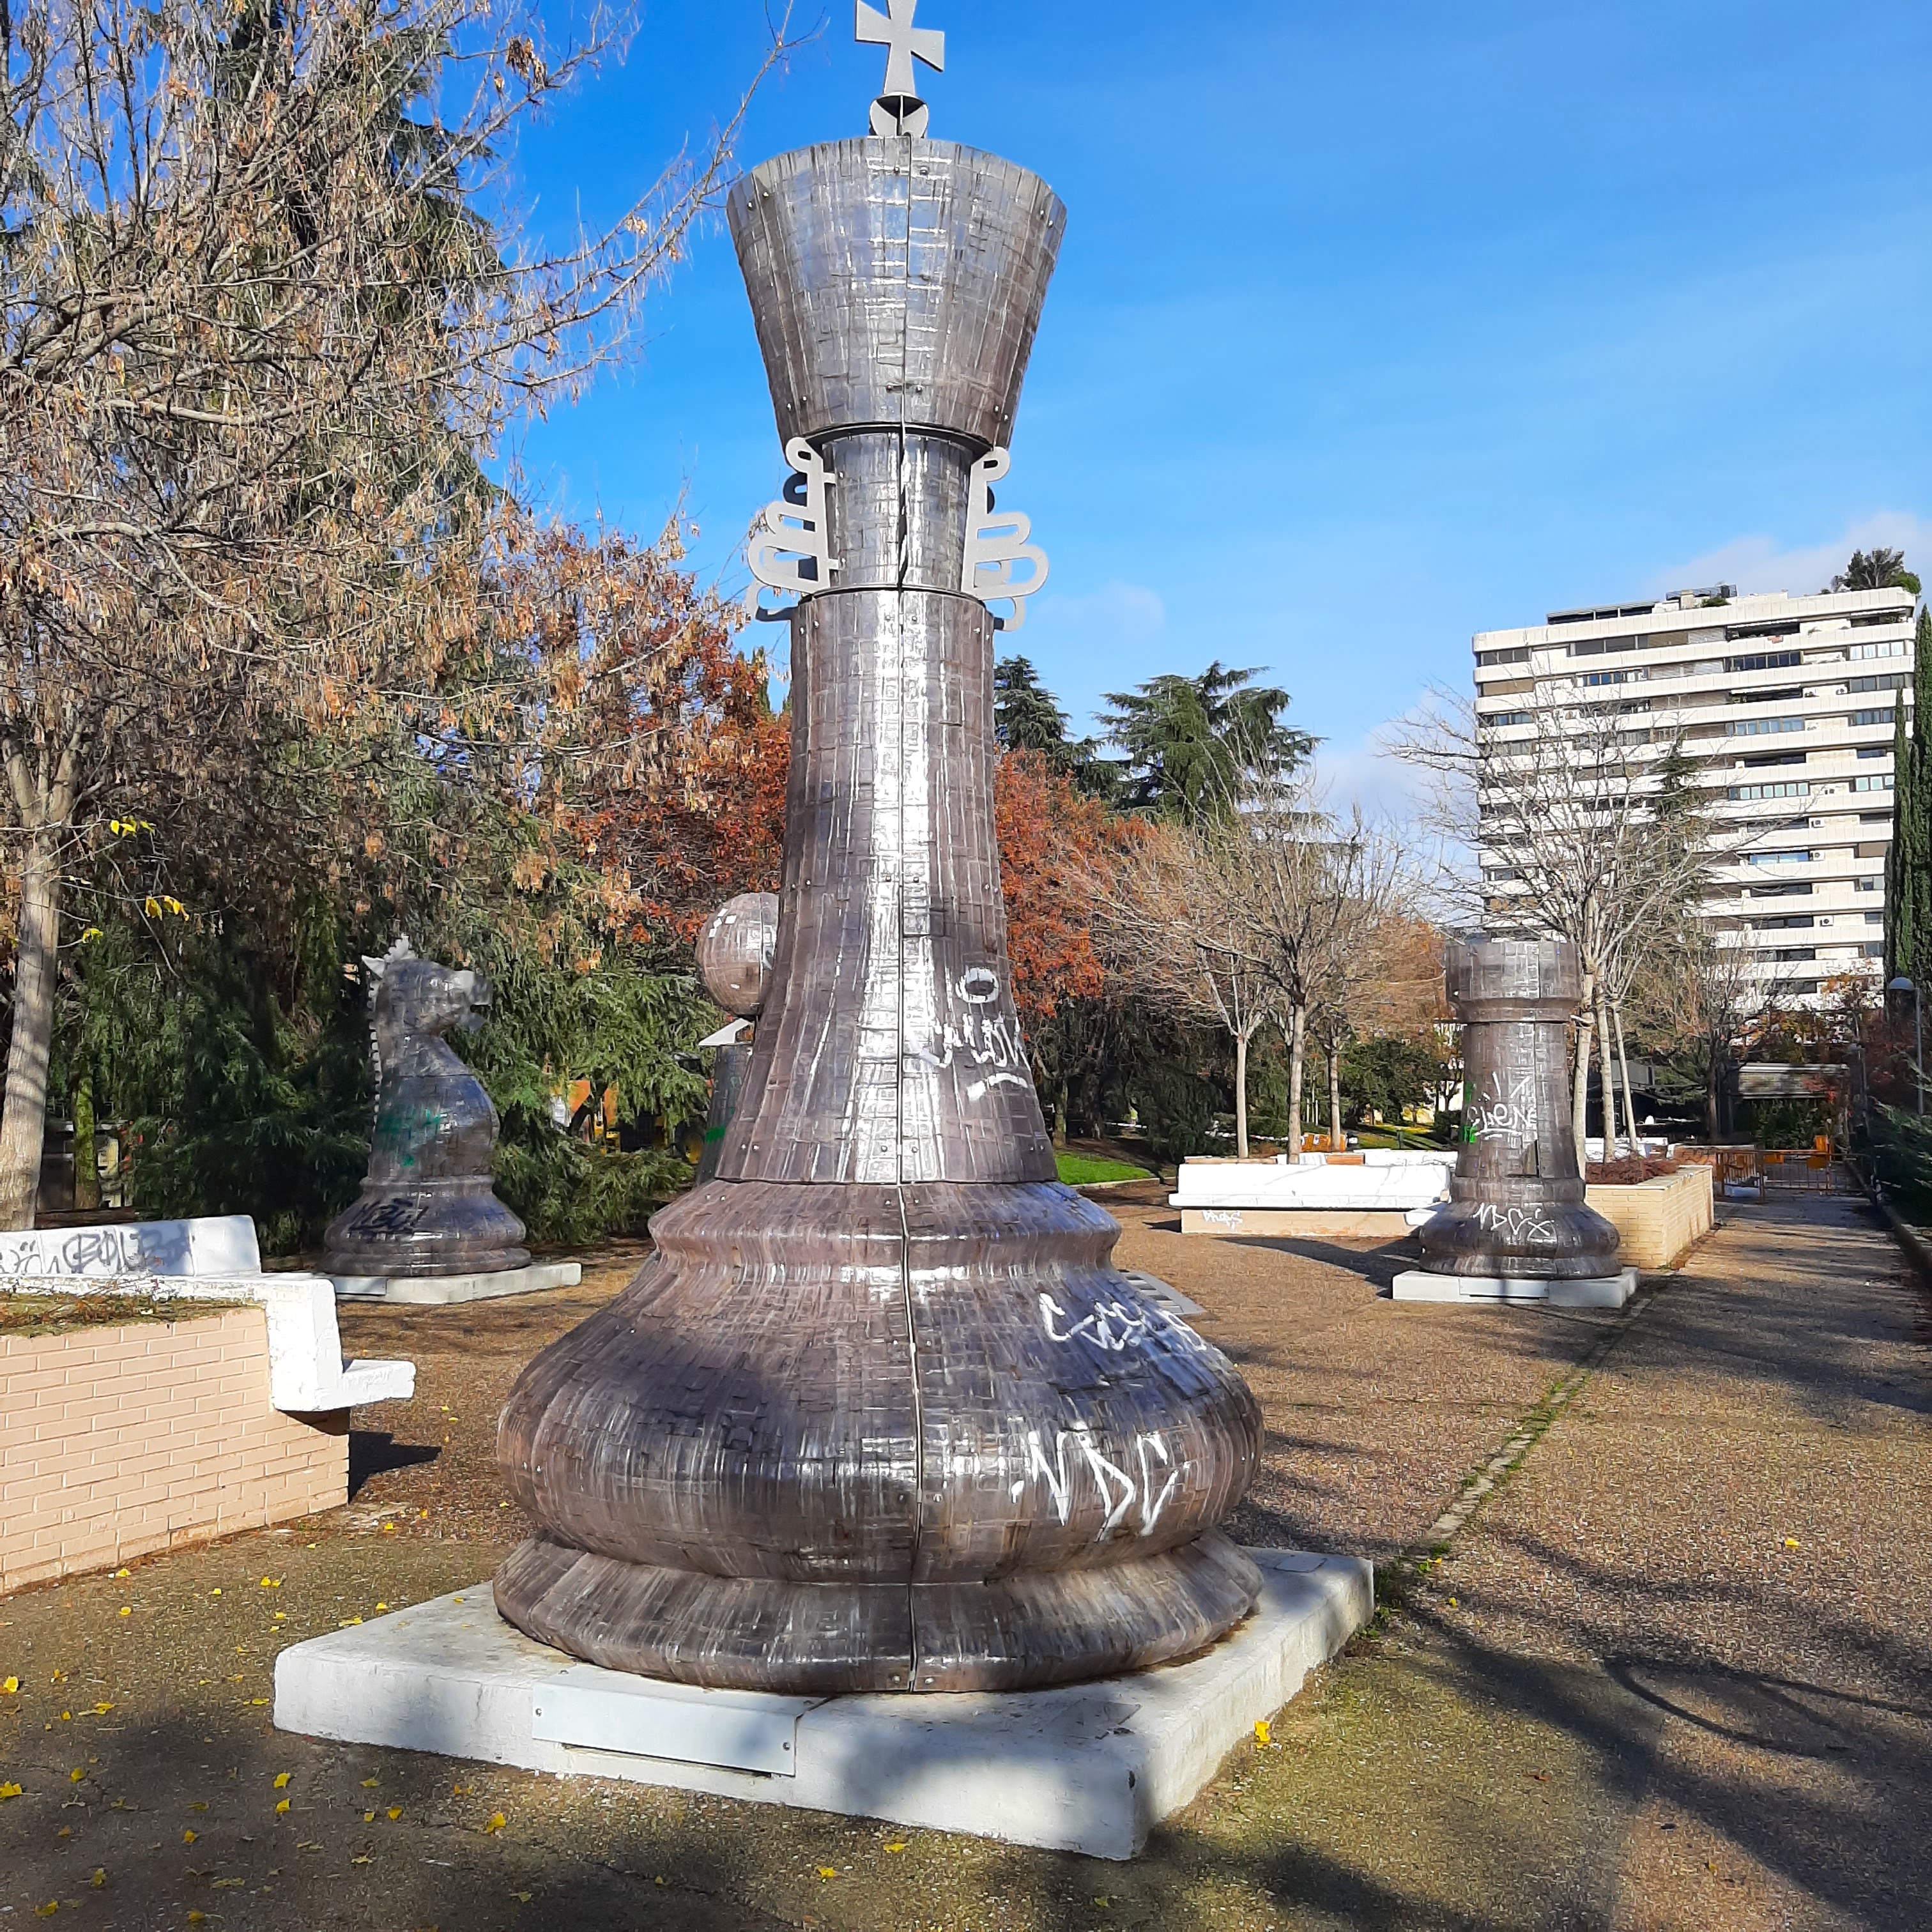 Los jardines de Pablo Sorozábal: Un ajedrez gigante en Madrid